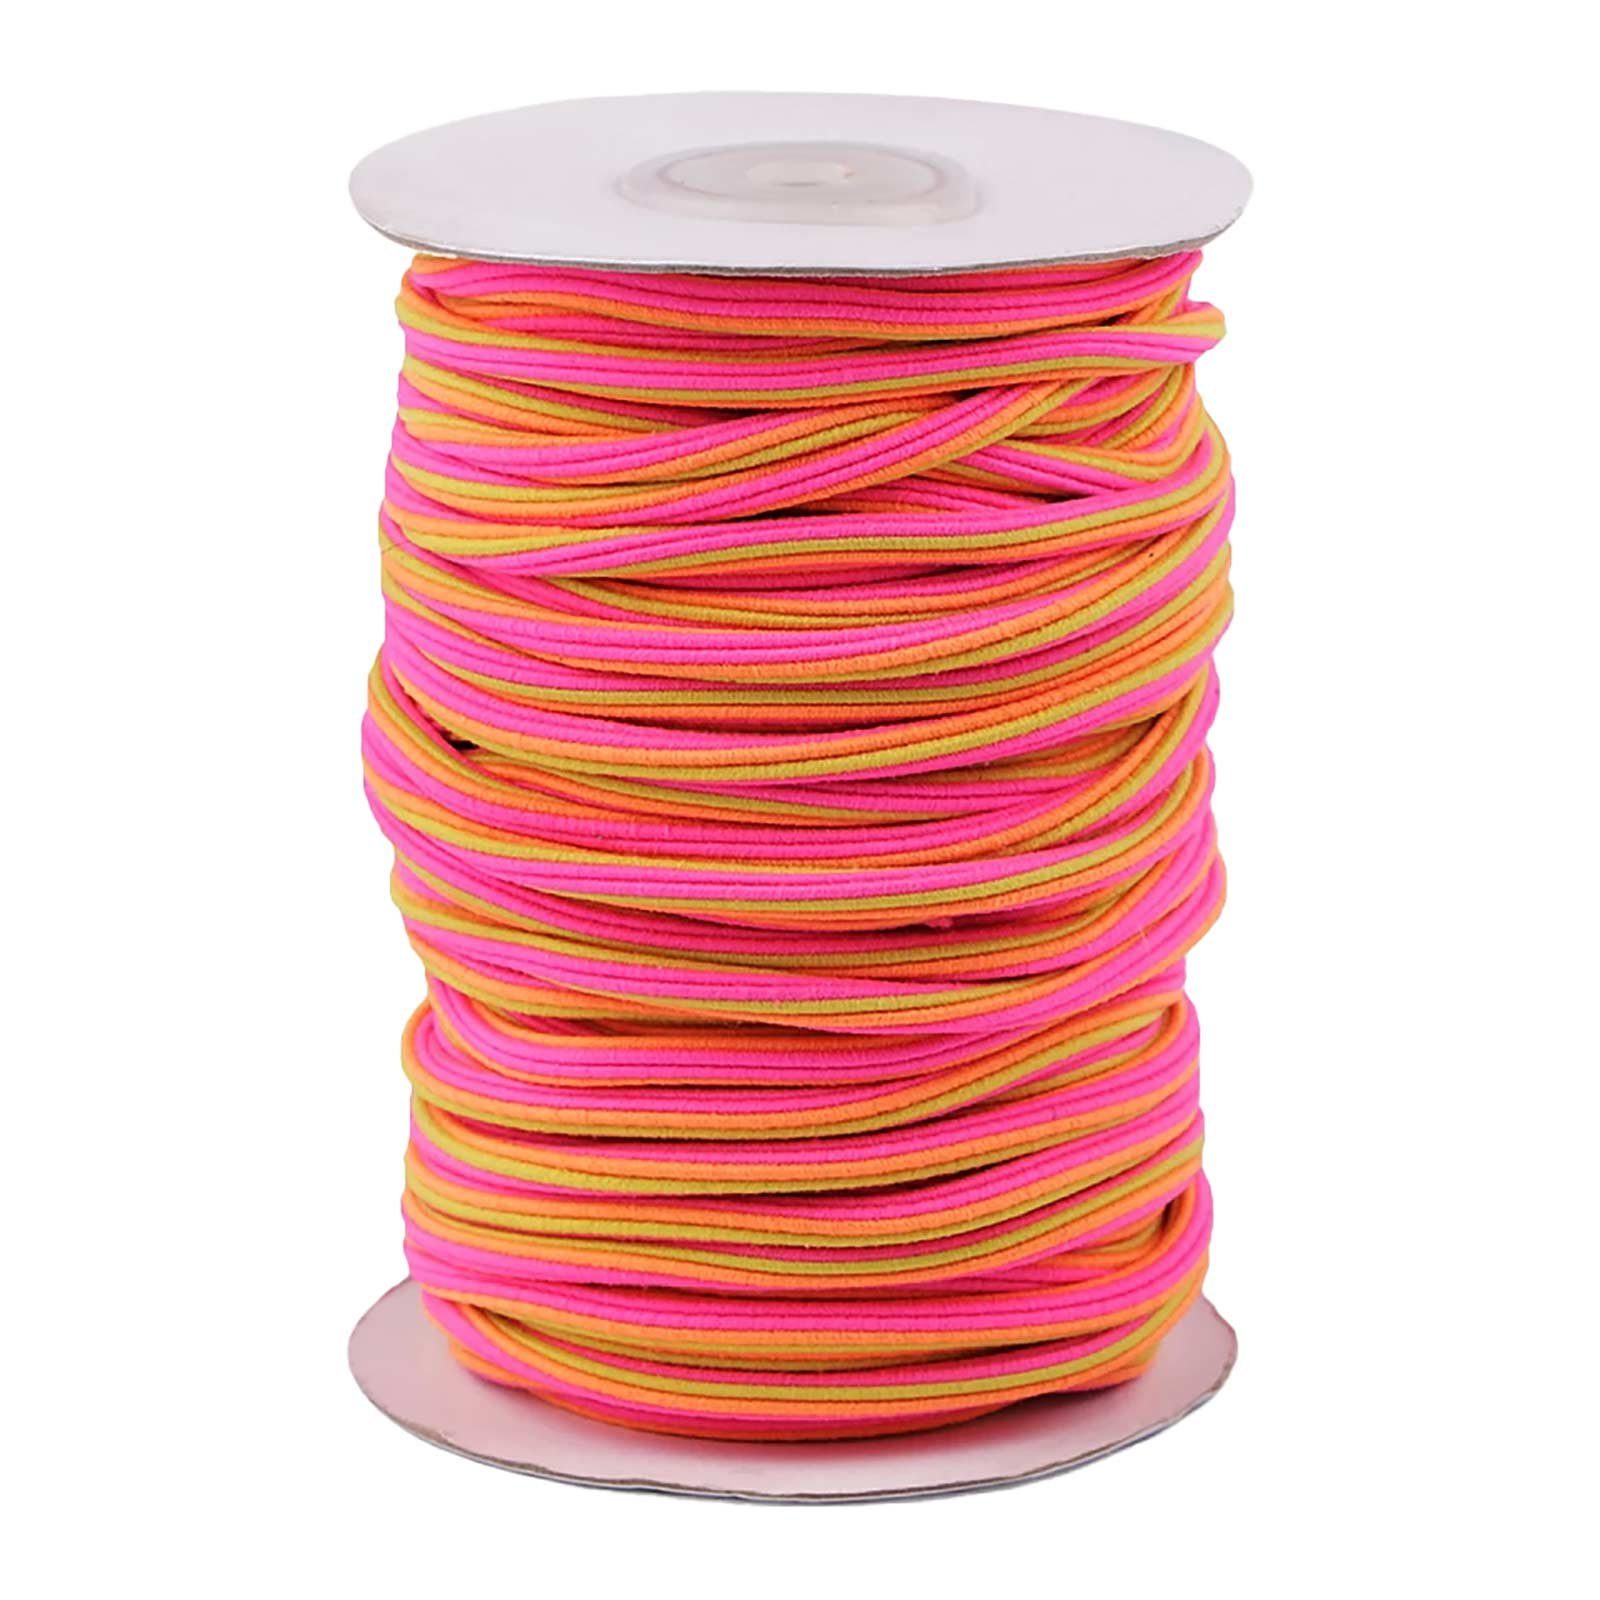 maDDma Gummiband 3m Gummikordel 5mm mehrfarbig für Bekleidung, gelb-orange-pink